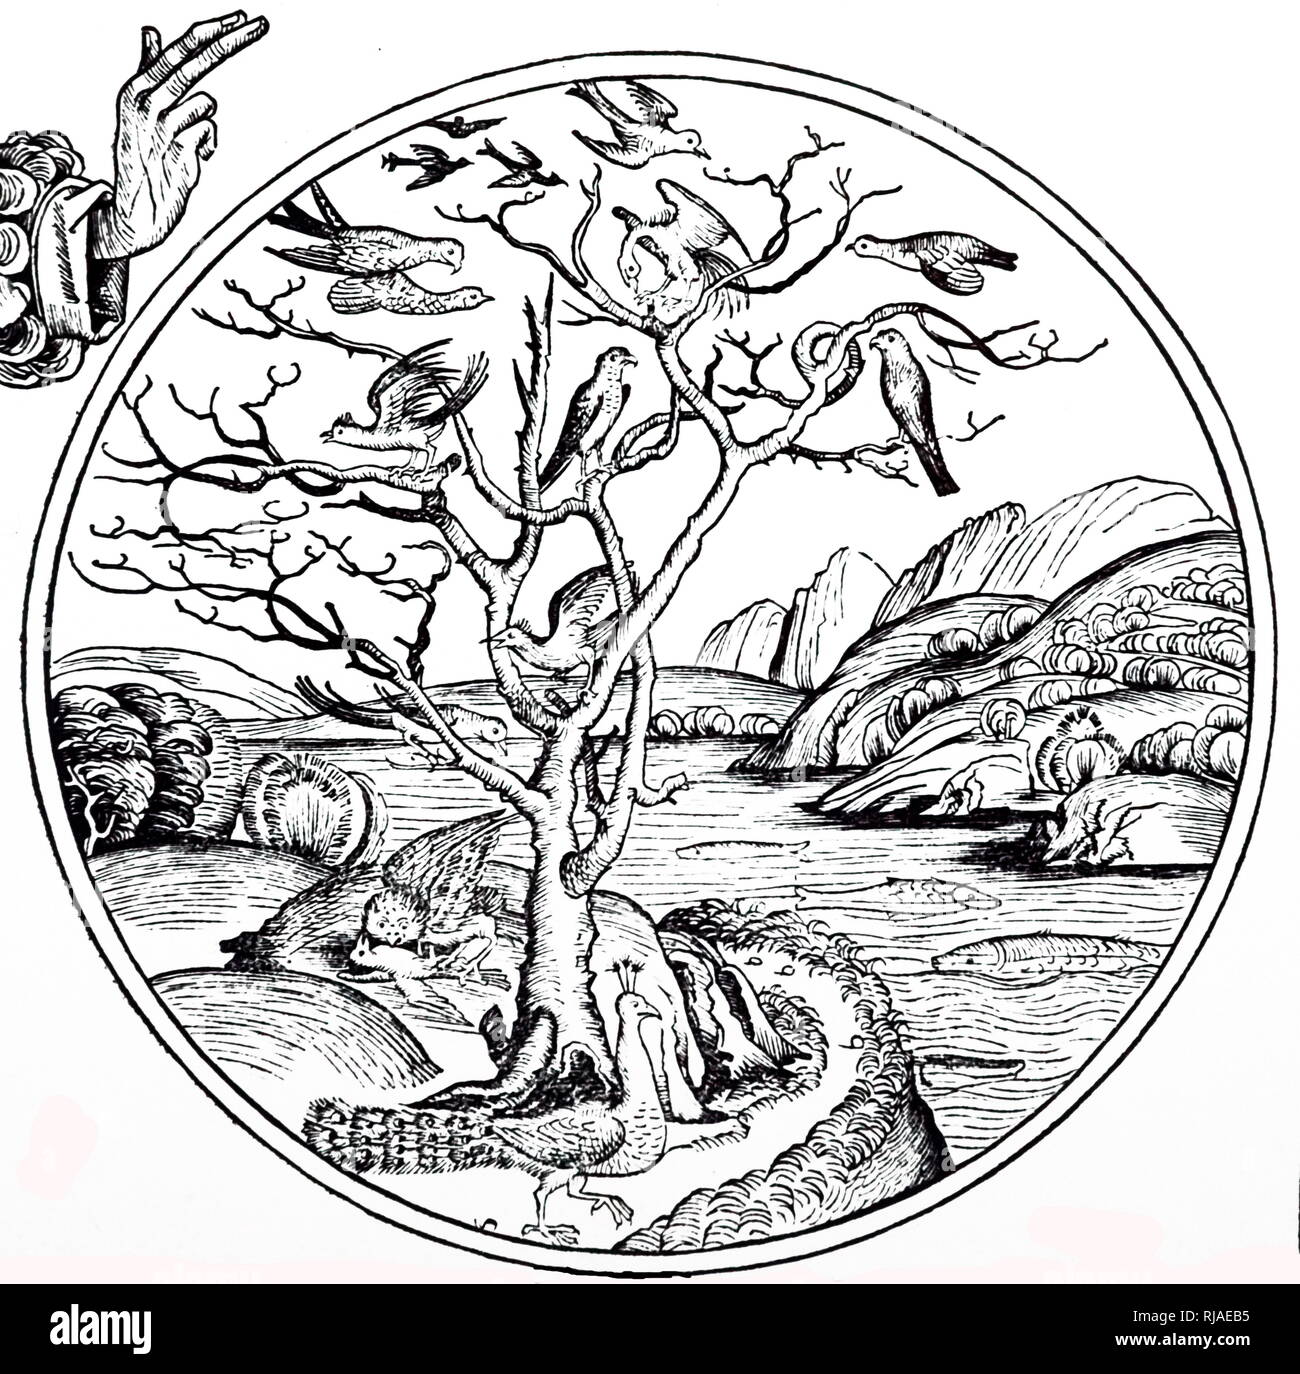 Ein holzschnitt Kupferstich mit der Darstellung der fünfte Tag der Schöpfung - Gott die Vögel und die Fische geschaffen. Vom 15. Jahrhundert Stockfoto